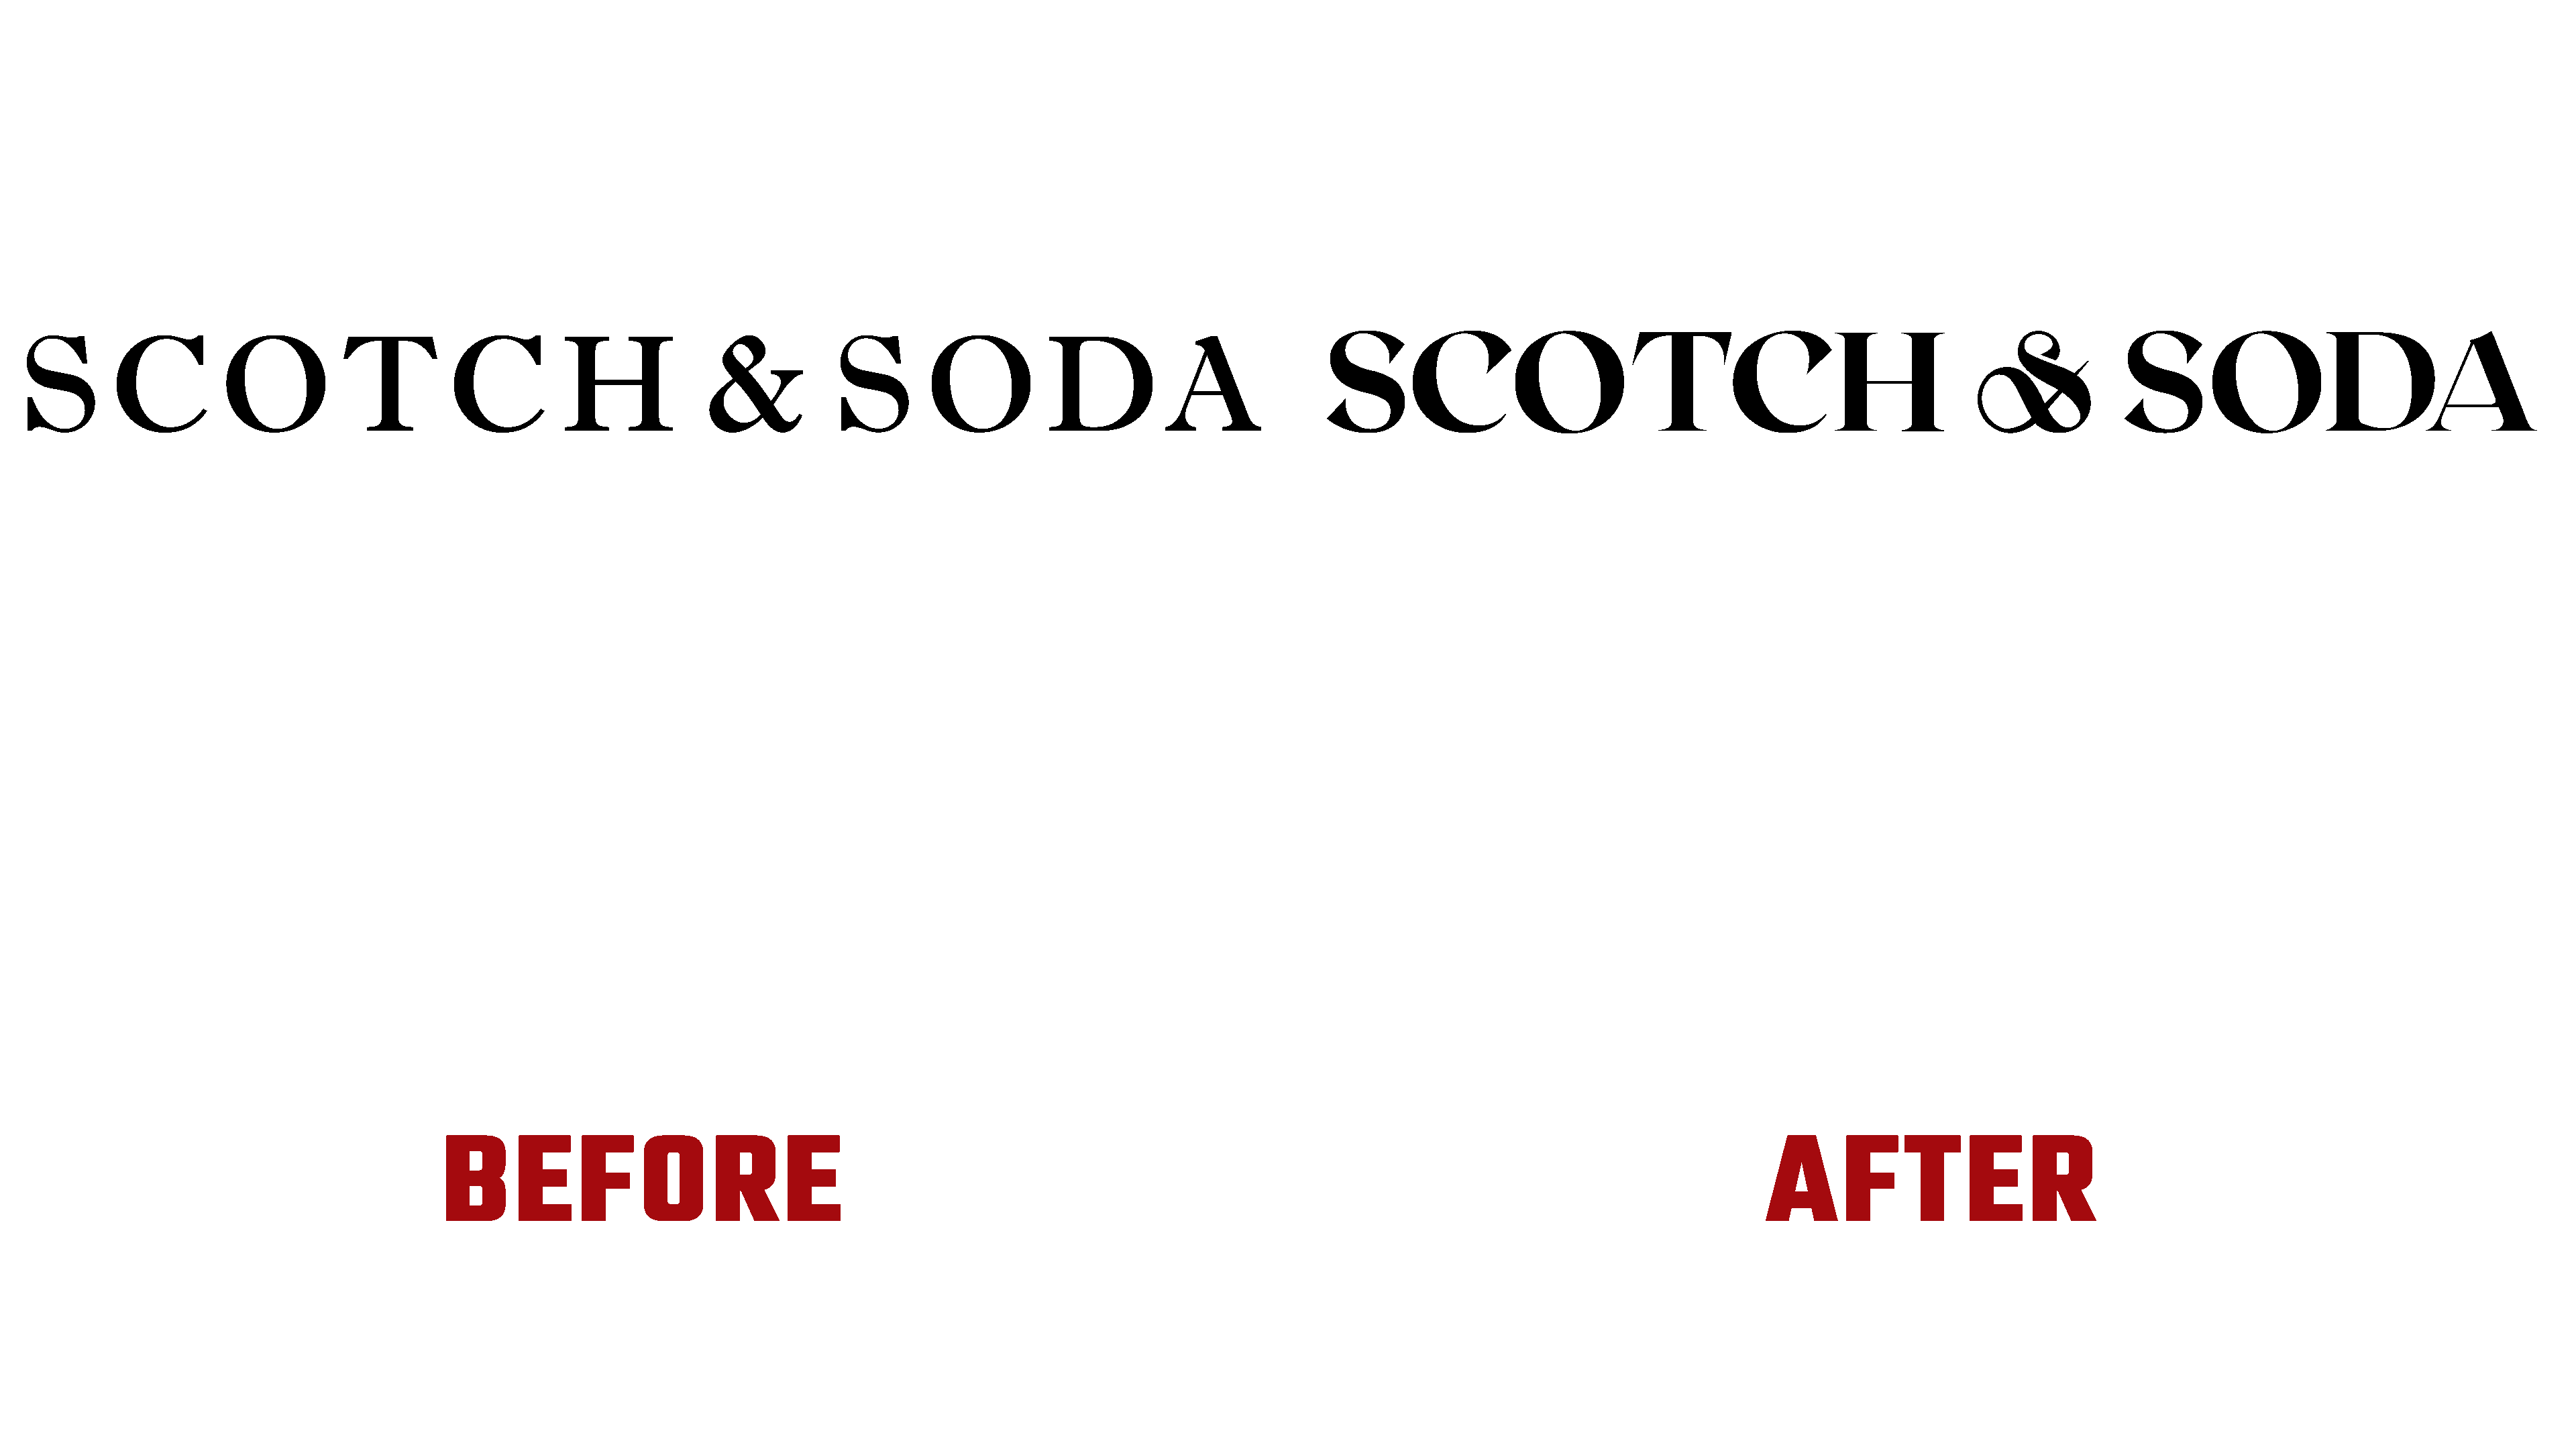 Scotch & unveiled a visual